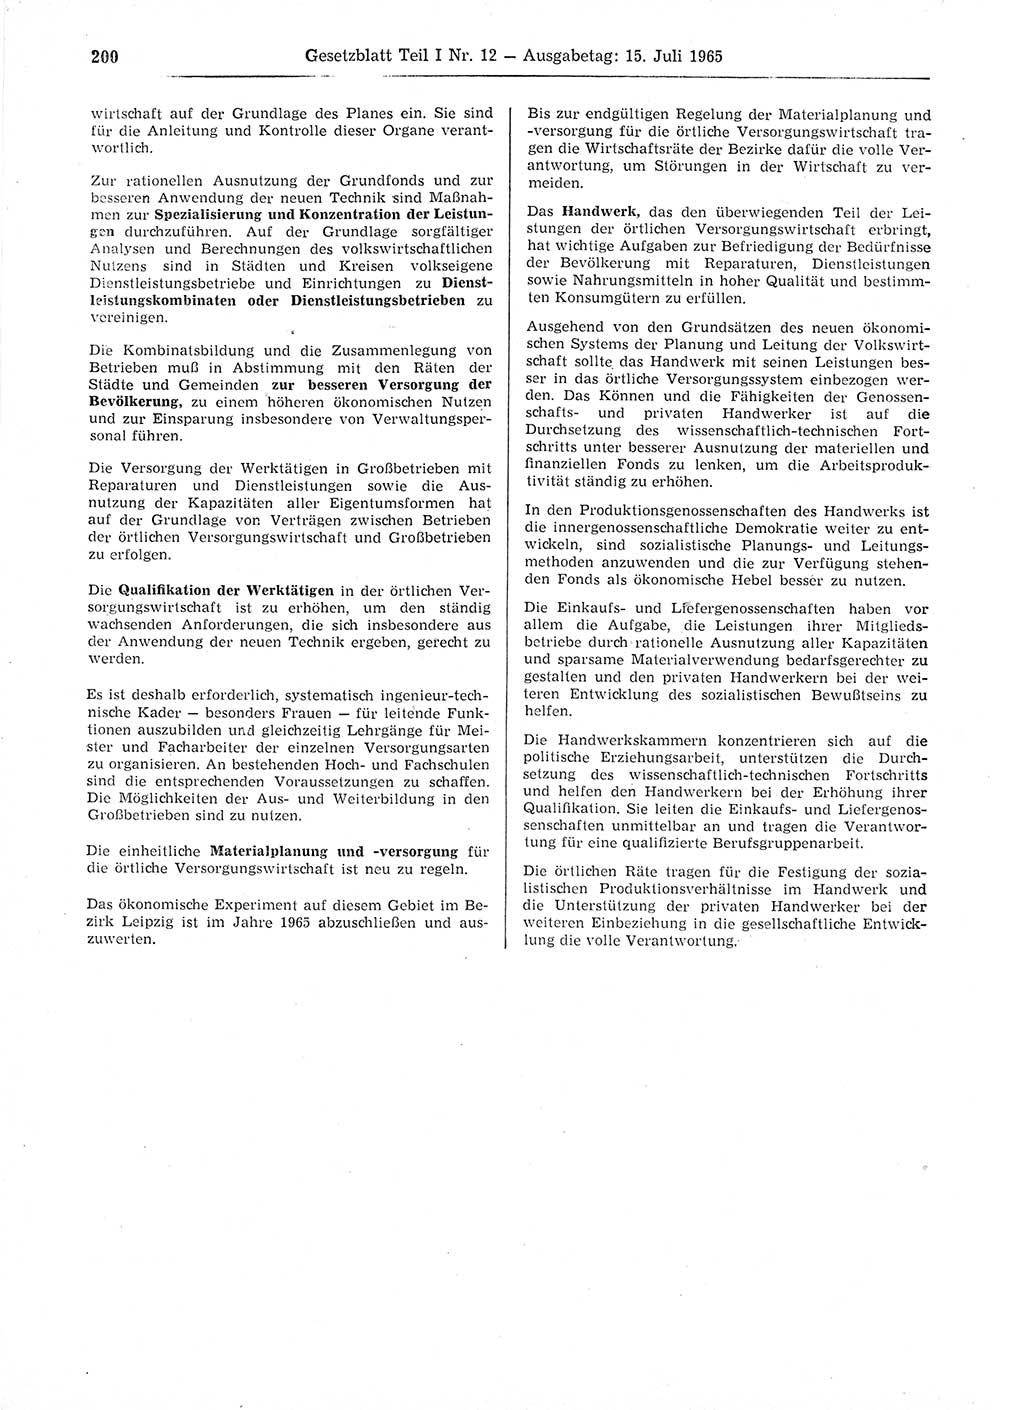 Gesetzblatt (GBl.) der Deutschen Demokratischen Republik (DDR) Teil Ⅰ 1965, Seite 200 (GBl. DDR Ⅰ 1965, S. 200)